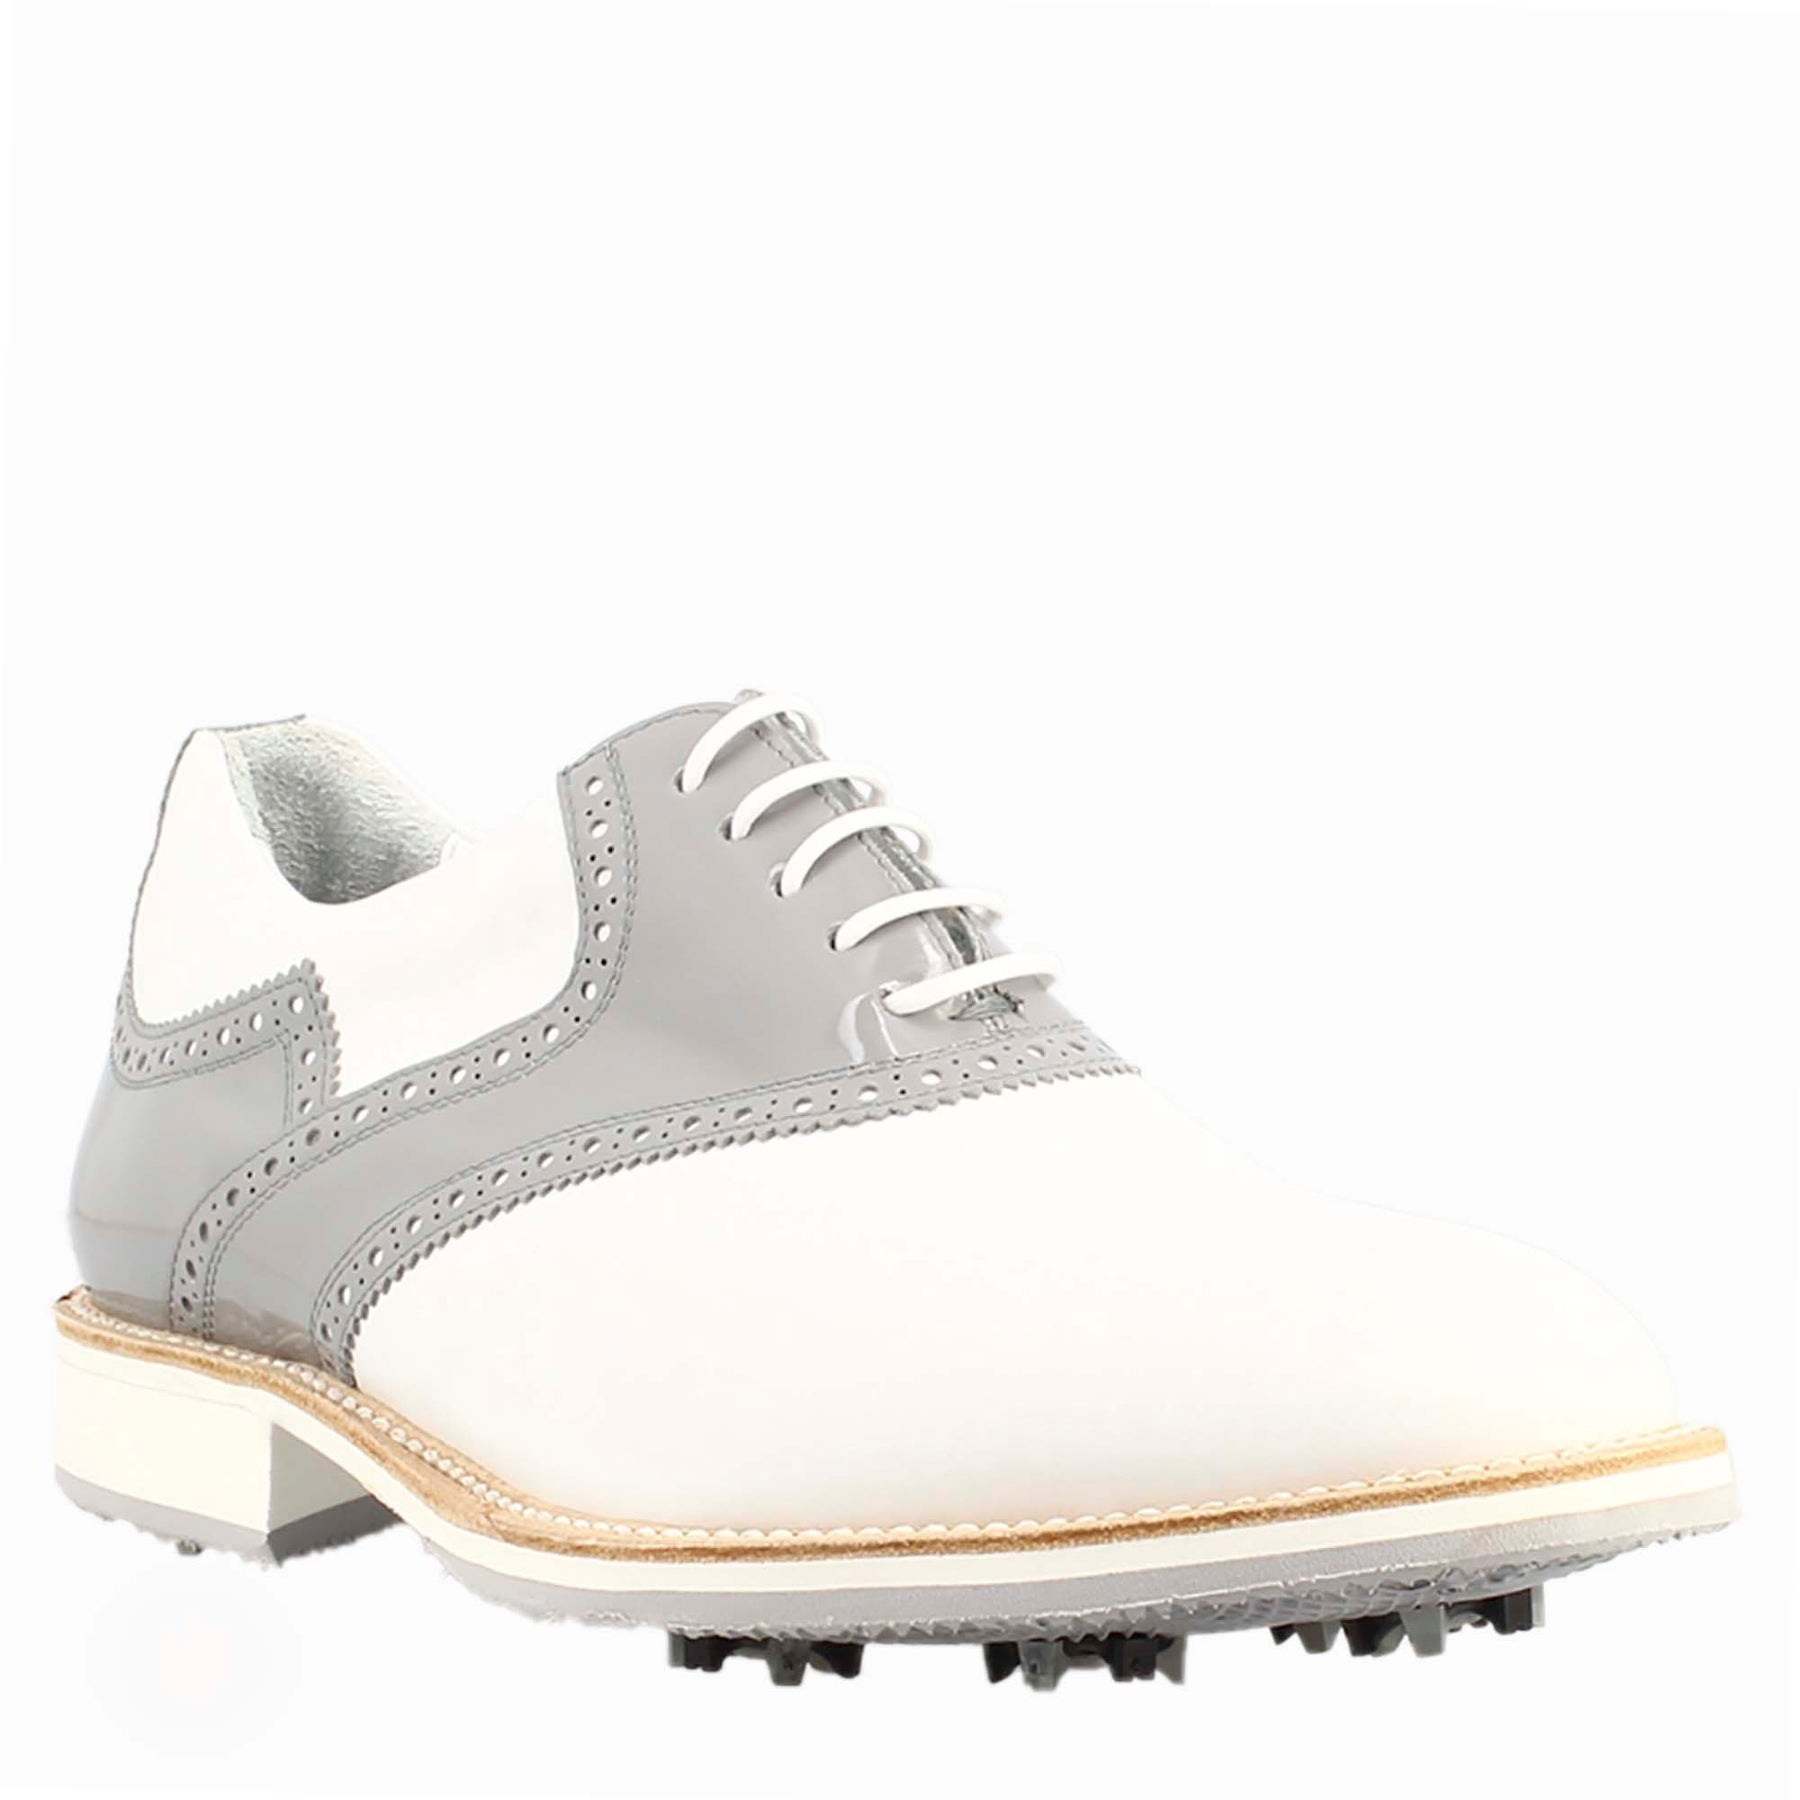 Scarpe da golf da donna colore bianco e grigio dettagli brogue artigianali in pelle